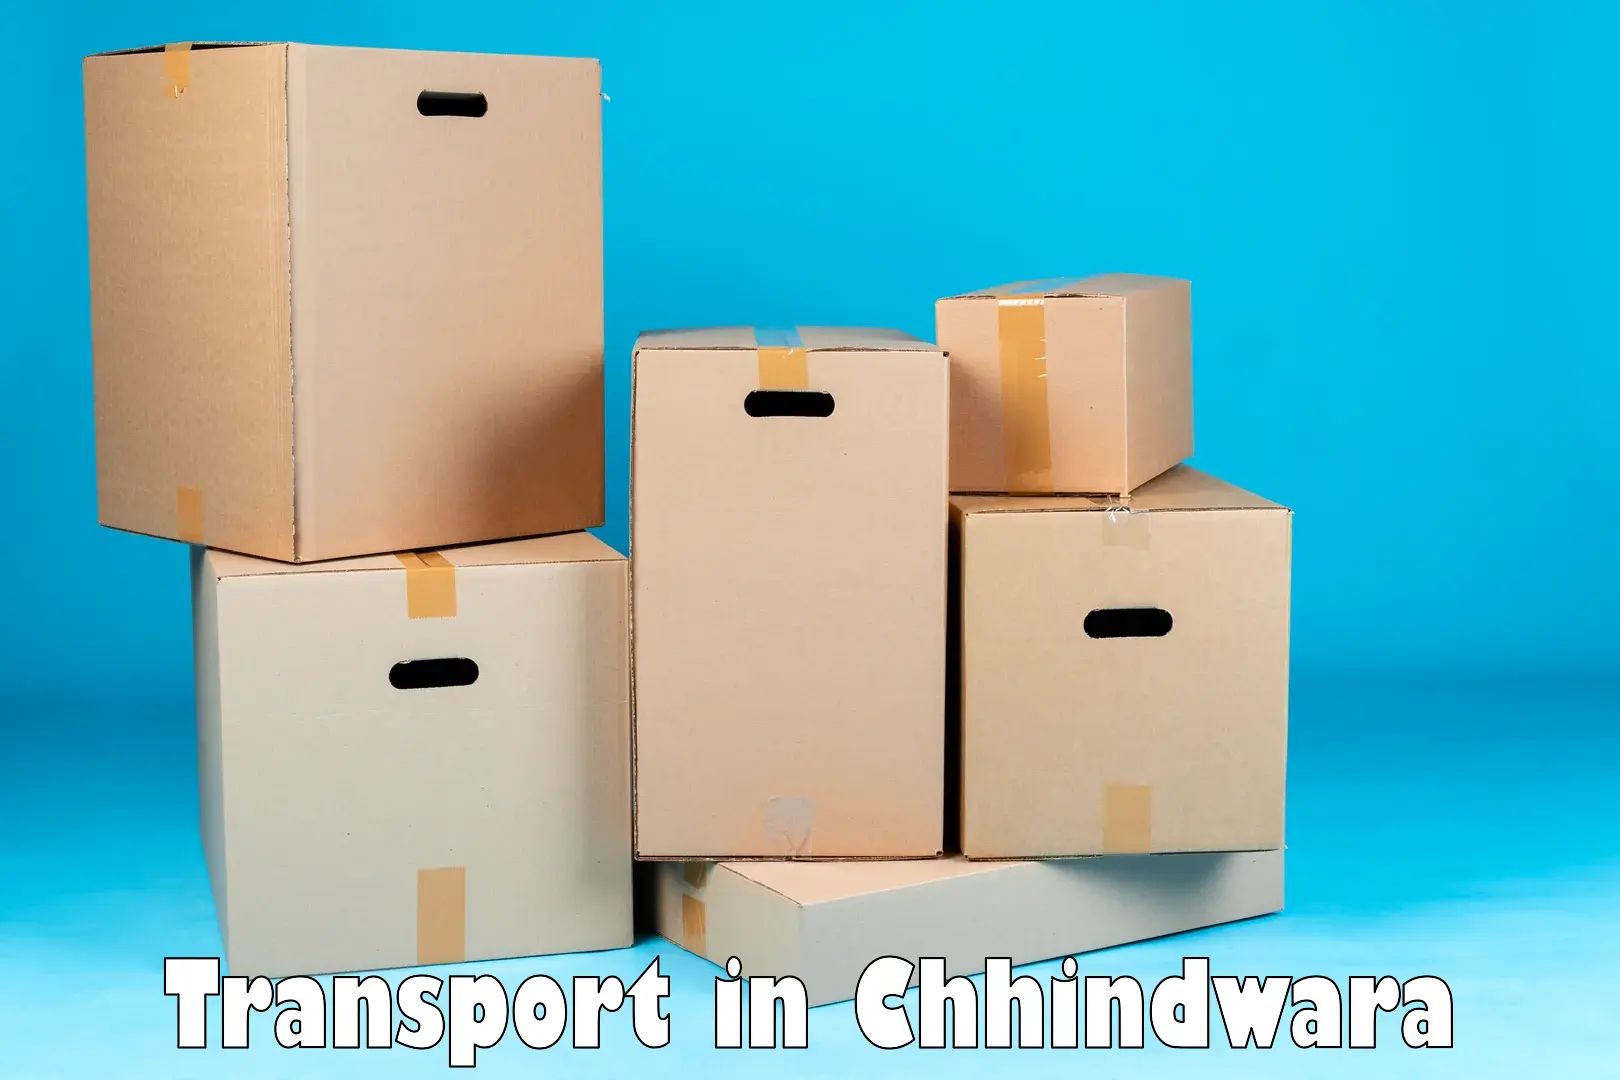 Cargo train transport services in Chhindwara